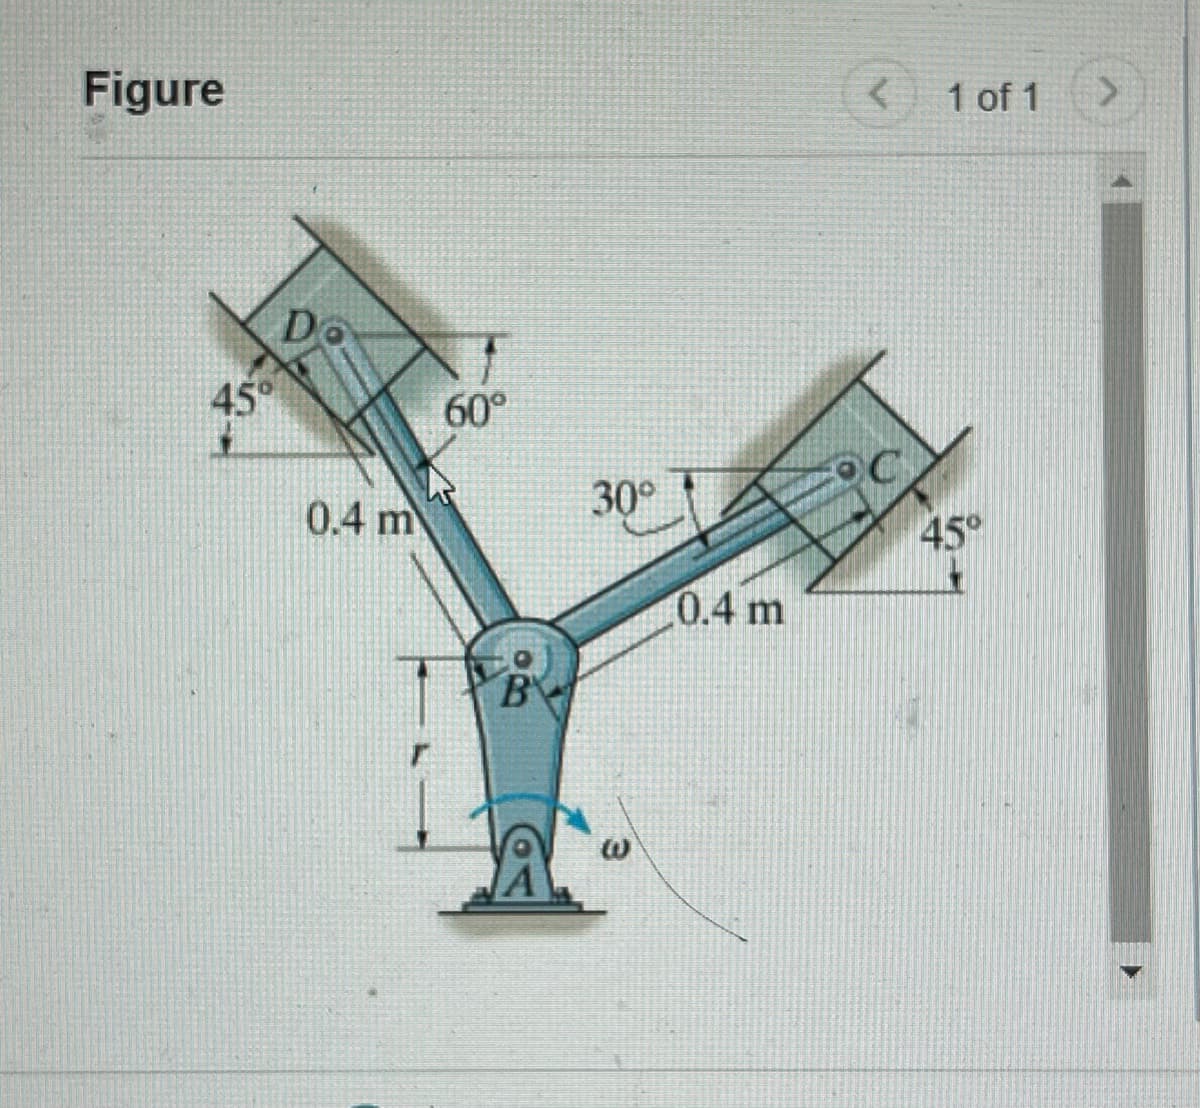 Figure
D
45°
60°
0.4 m
B
30°
0.4 m
ω
1 of 1
45°